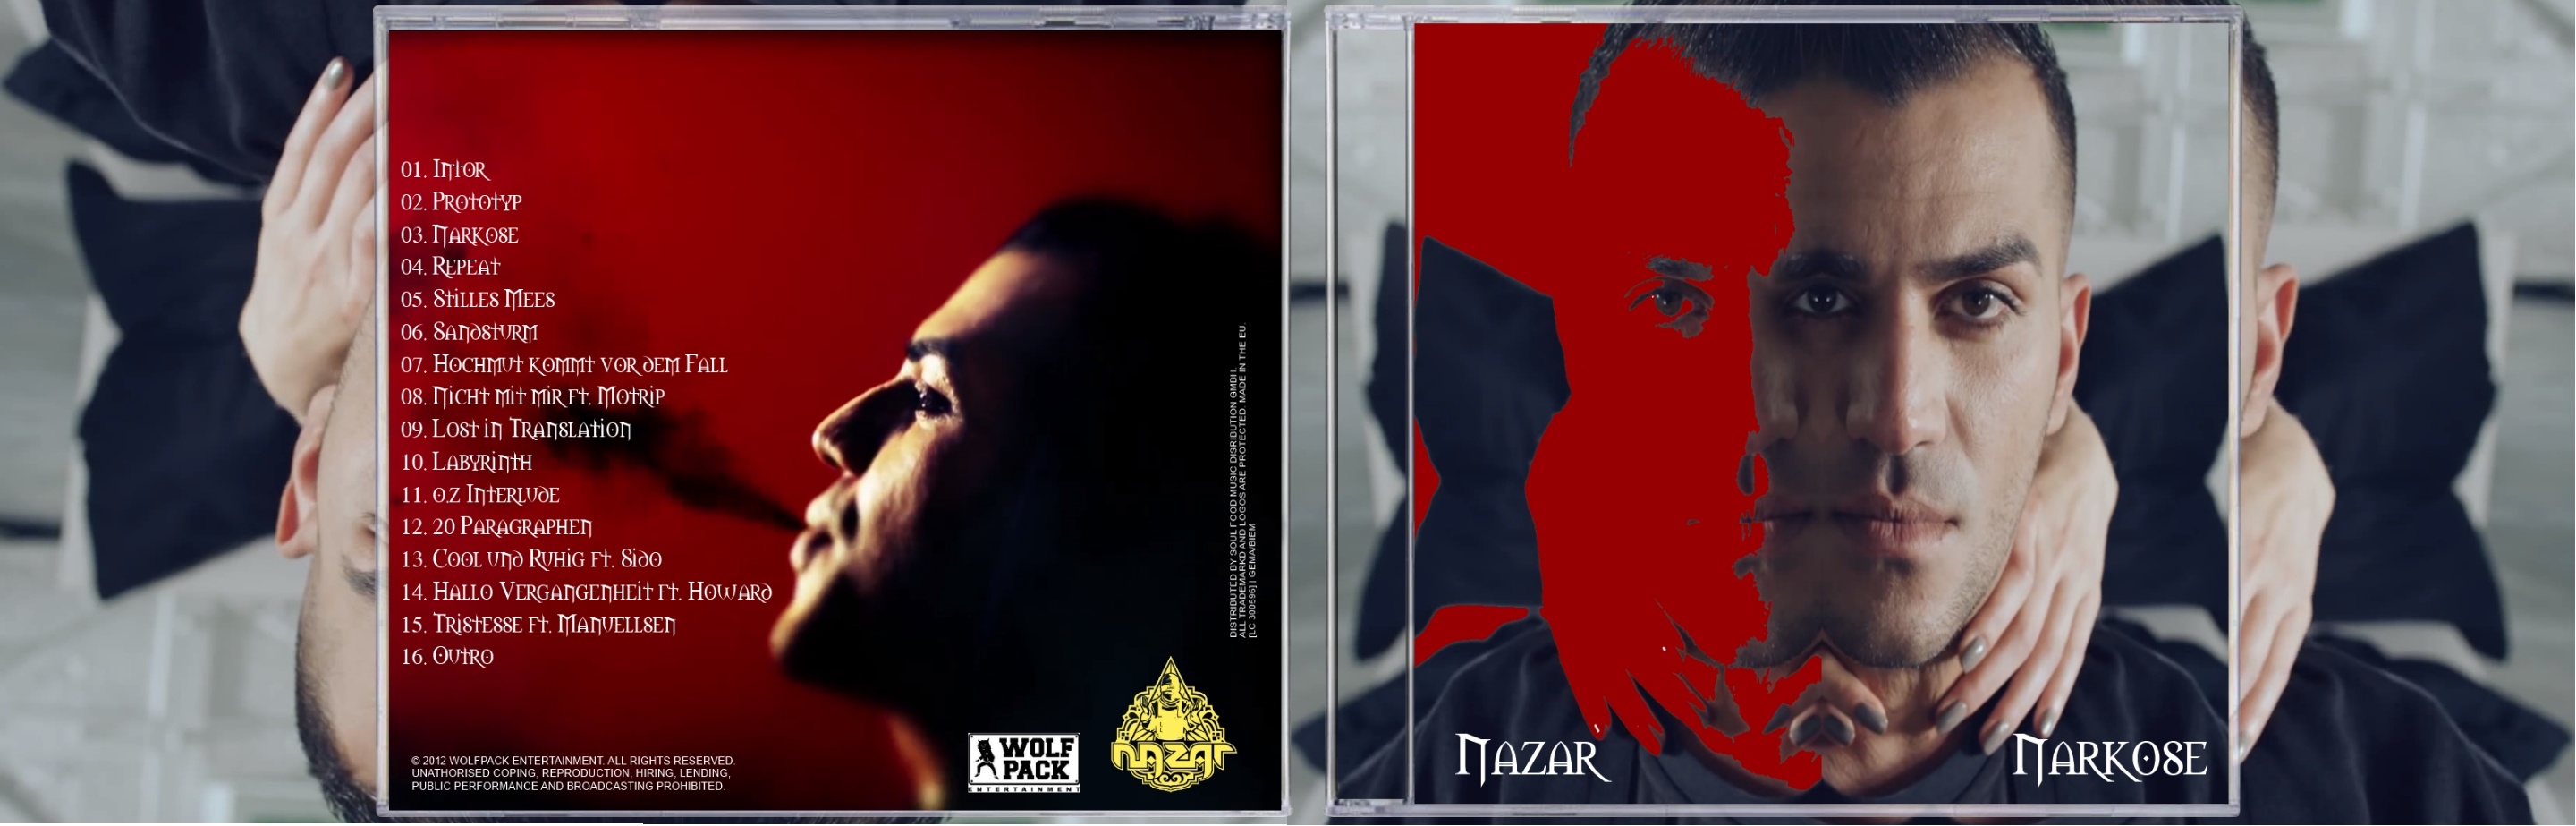 Nazar - Narkose box cover